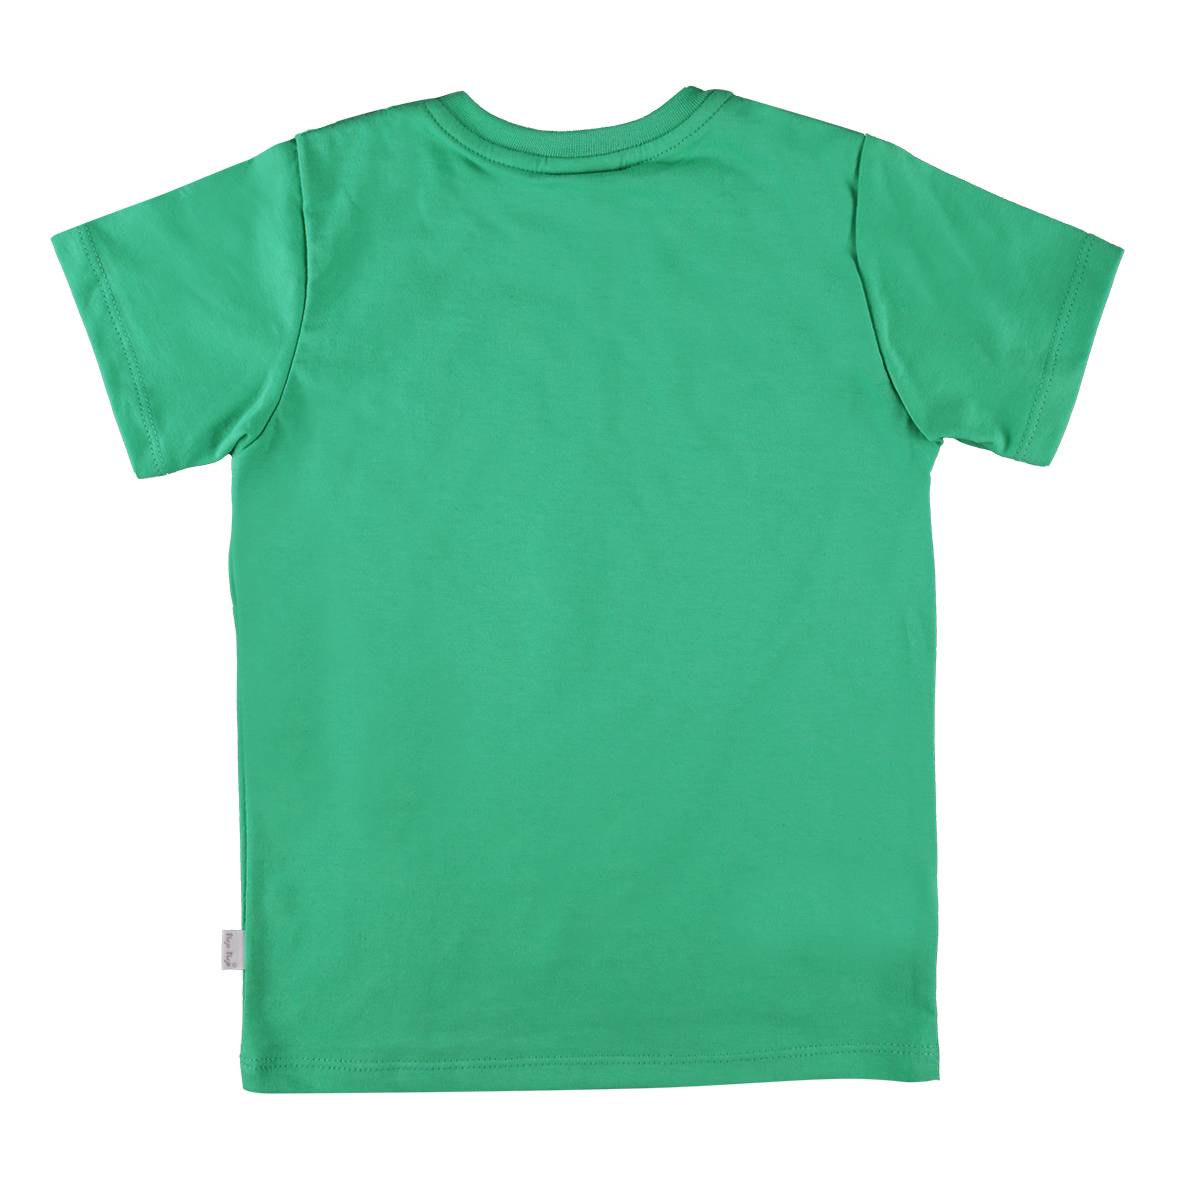 Koszulka chłopięca krótki rękaw, zielona z wozem policyjnym, Tup Tup